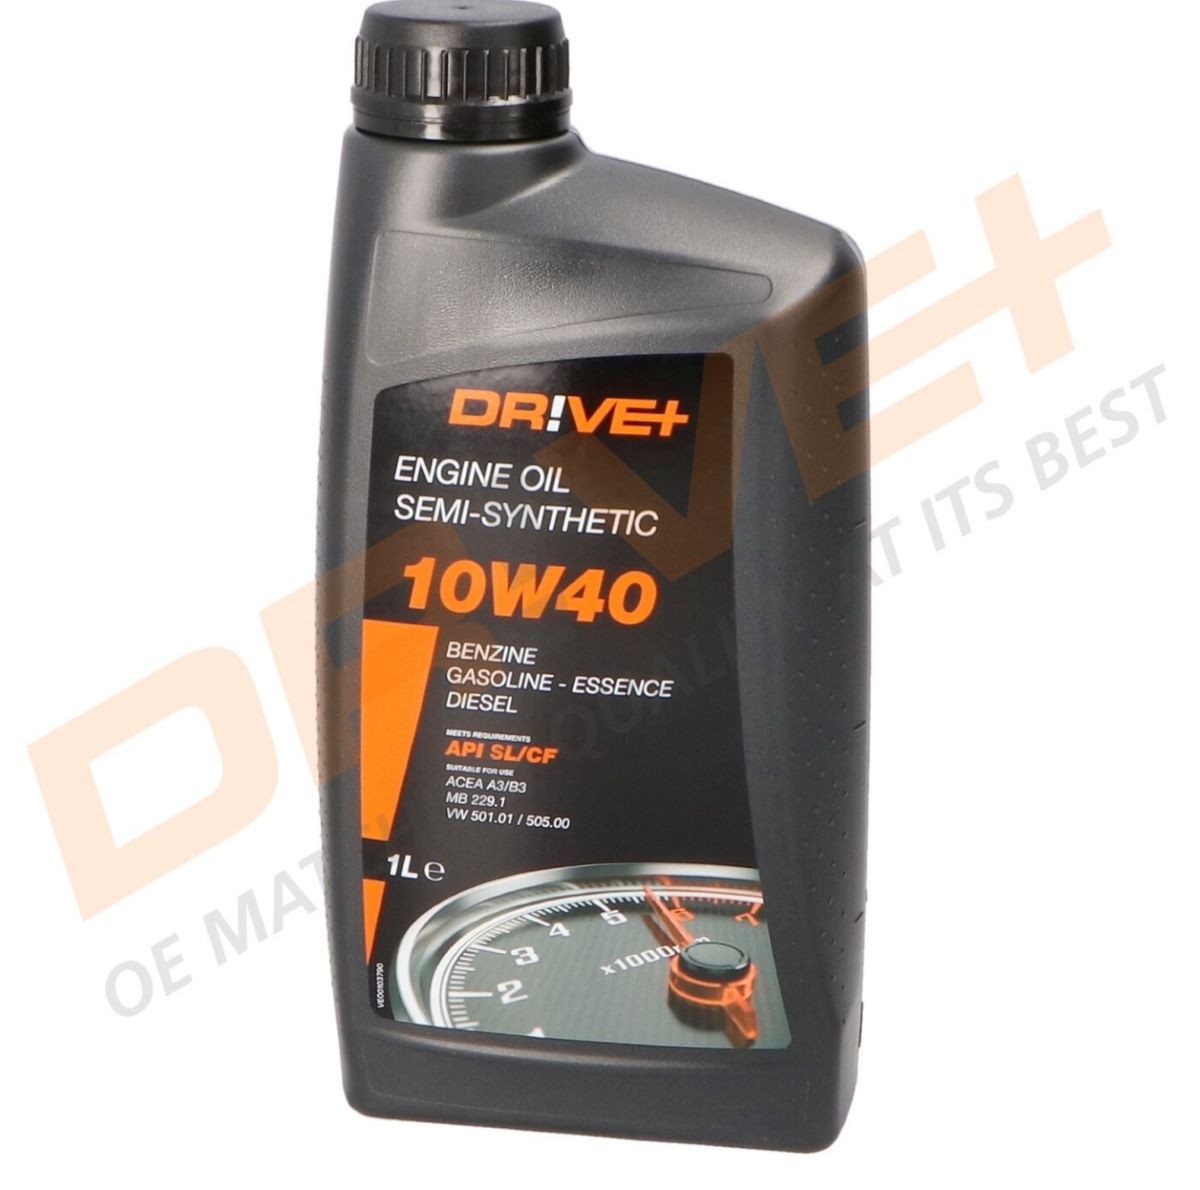 Great value for money - Dr!ve+ Engine oil DP3310.10.042